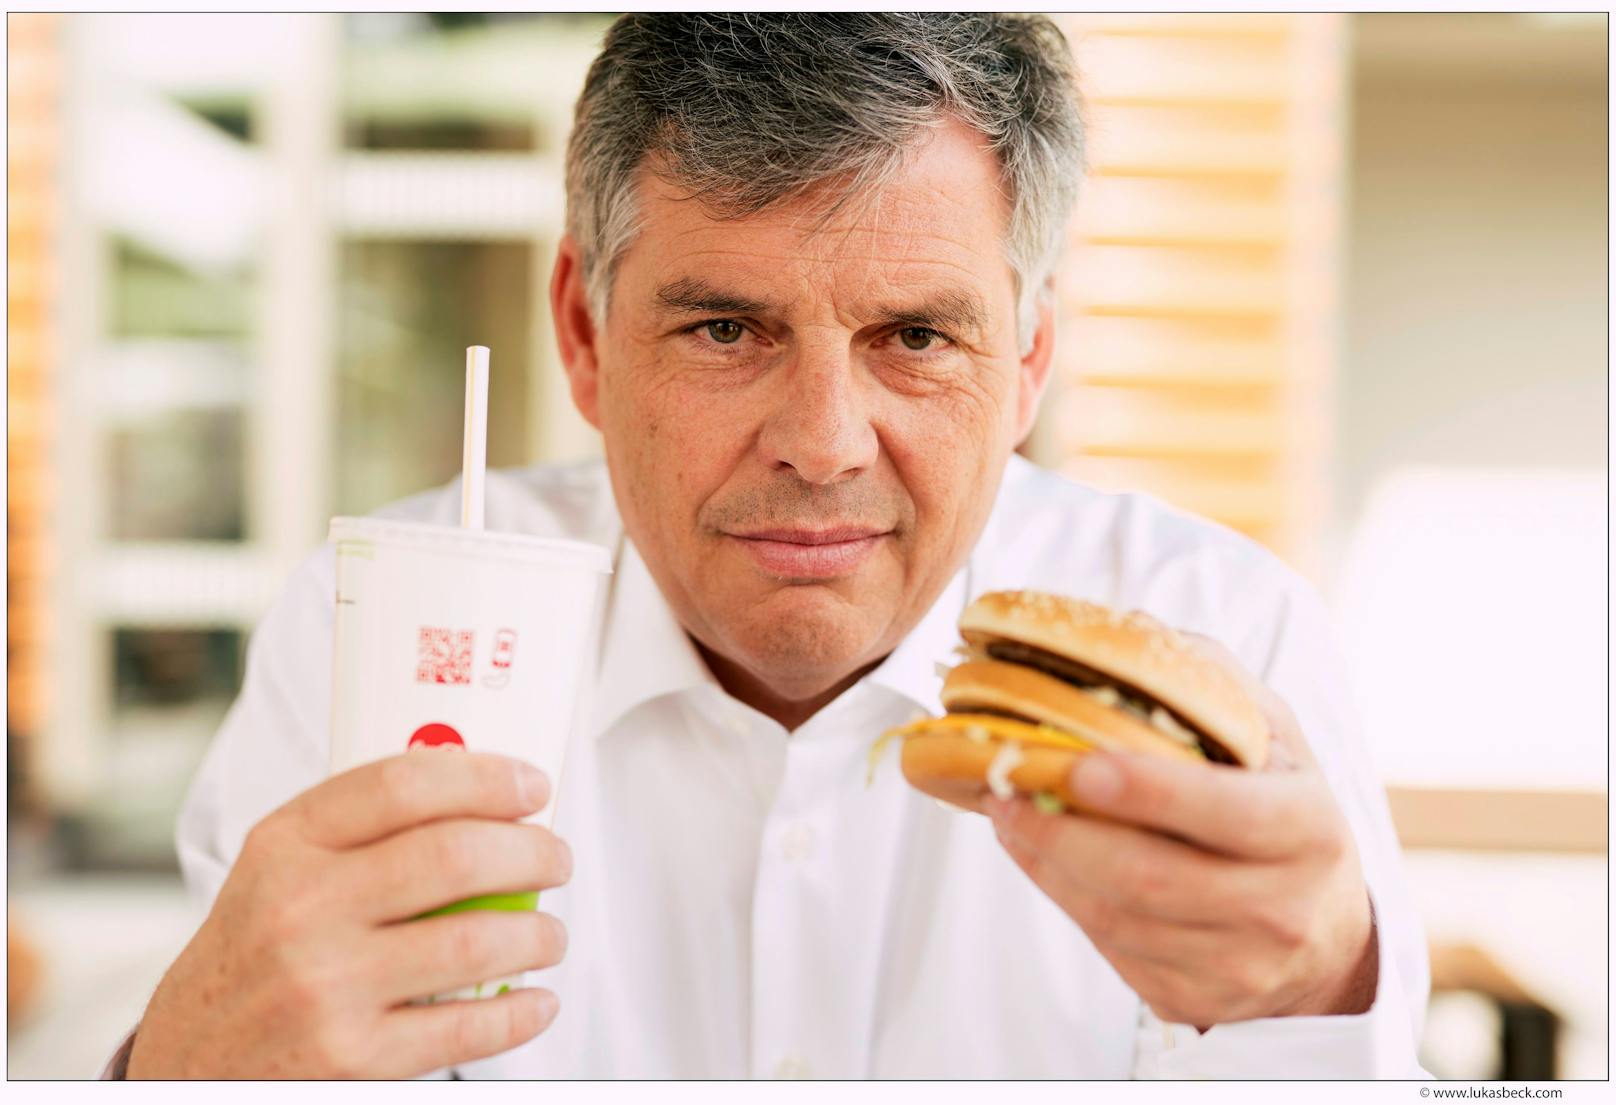 Harald Sükar nahm mit Burger, Pizza und Kebab 10 Kilo in 40 Tagen ab. Seine Diät-Methode veröffentlichte er jetzt in dem "Fast Food Diät".